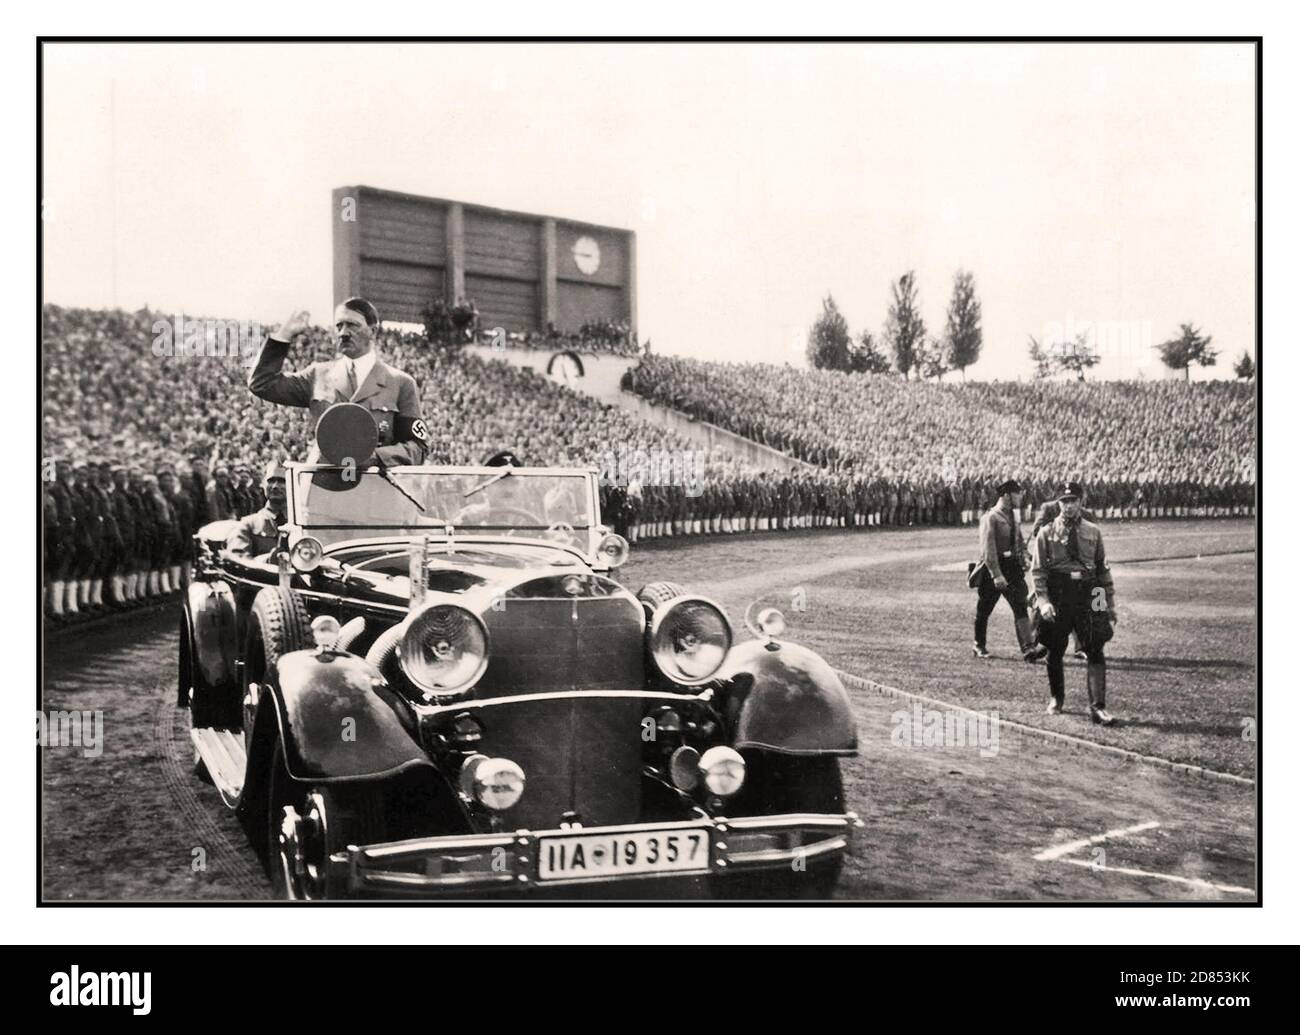 Adolf Hitler de 1930 en un mitin juvenil de Hitler en Nuremberg en su Mercedes Motorcar superior abierto en 1935. NSDAP Reichs Party Convention of Freedom Nuremberg 10-16 de septiembre de 1935 Foto de stock